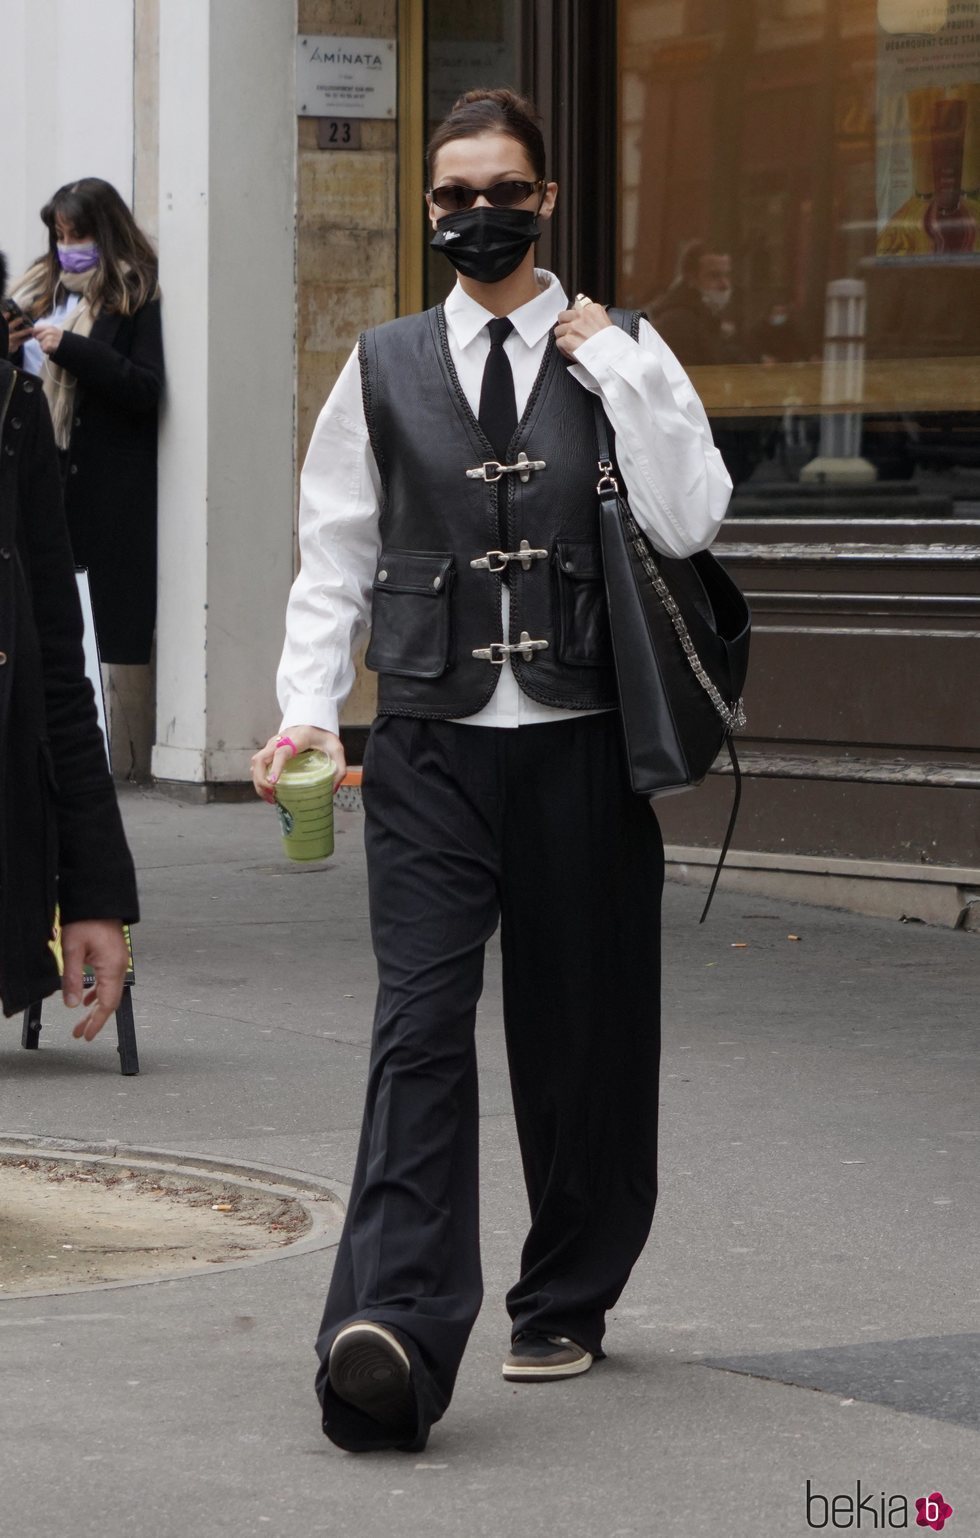 Bella Hadid con un look masculino en París